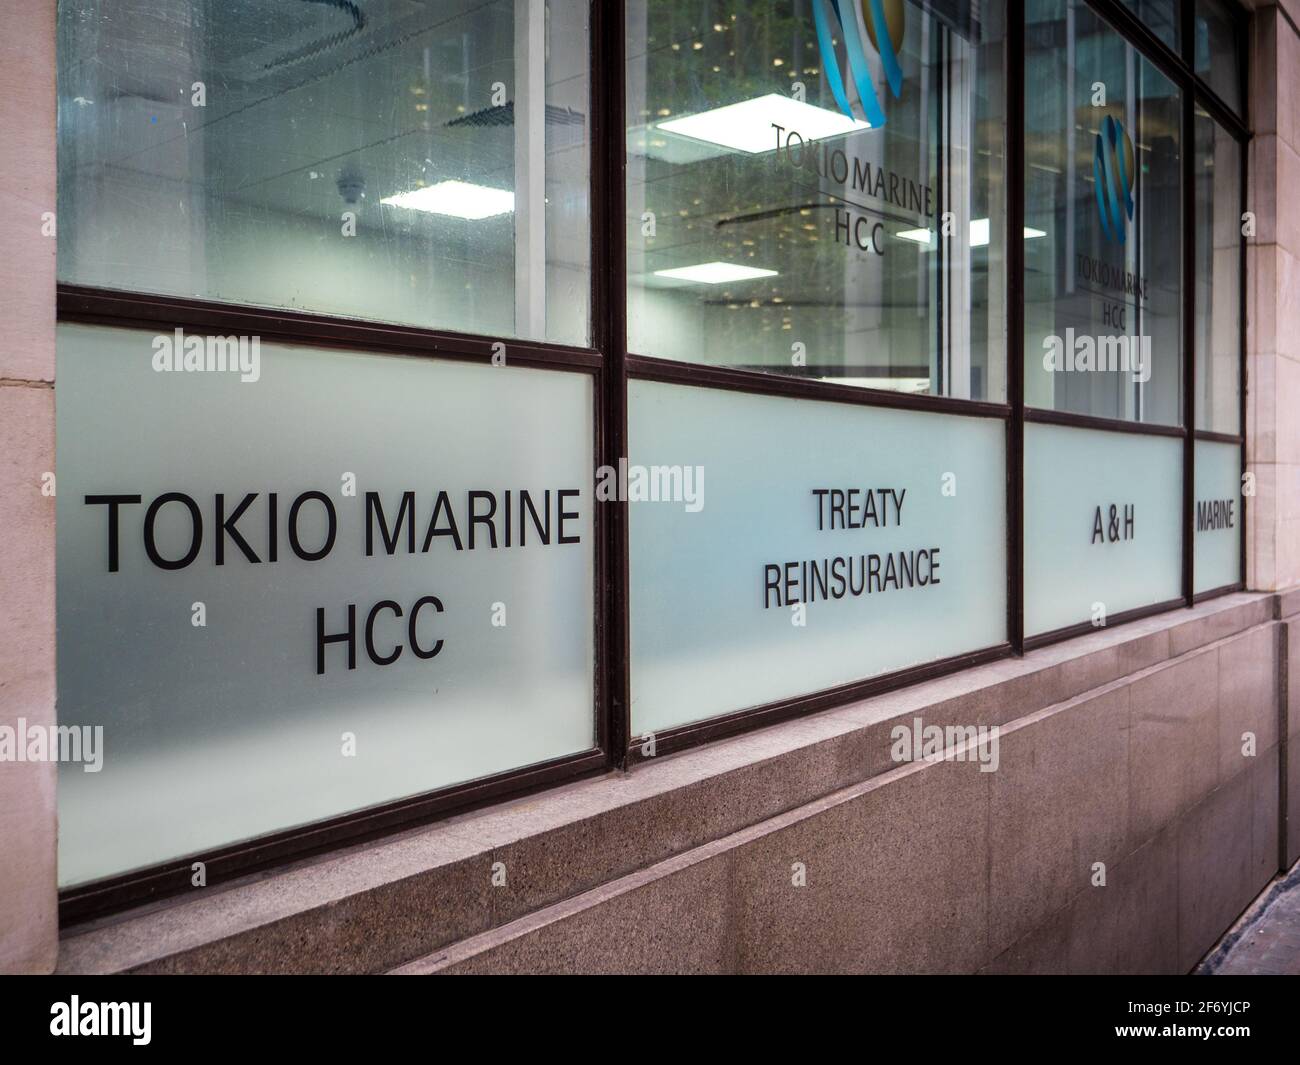 Oficinas de la Compañía de Seguros de CHC de Tokio Marine en el distrito financiero de la ciudad de Londres. Tokio Marine HCC es un grupo internacional de seguros especializados. Foto de stock